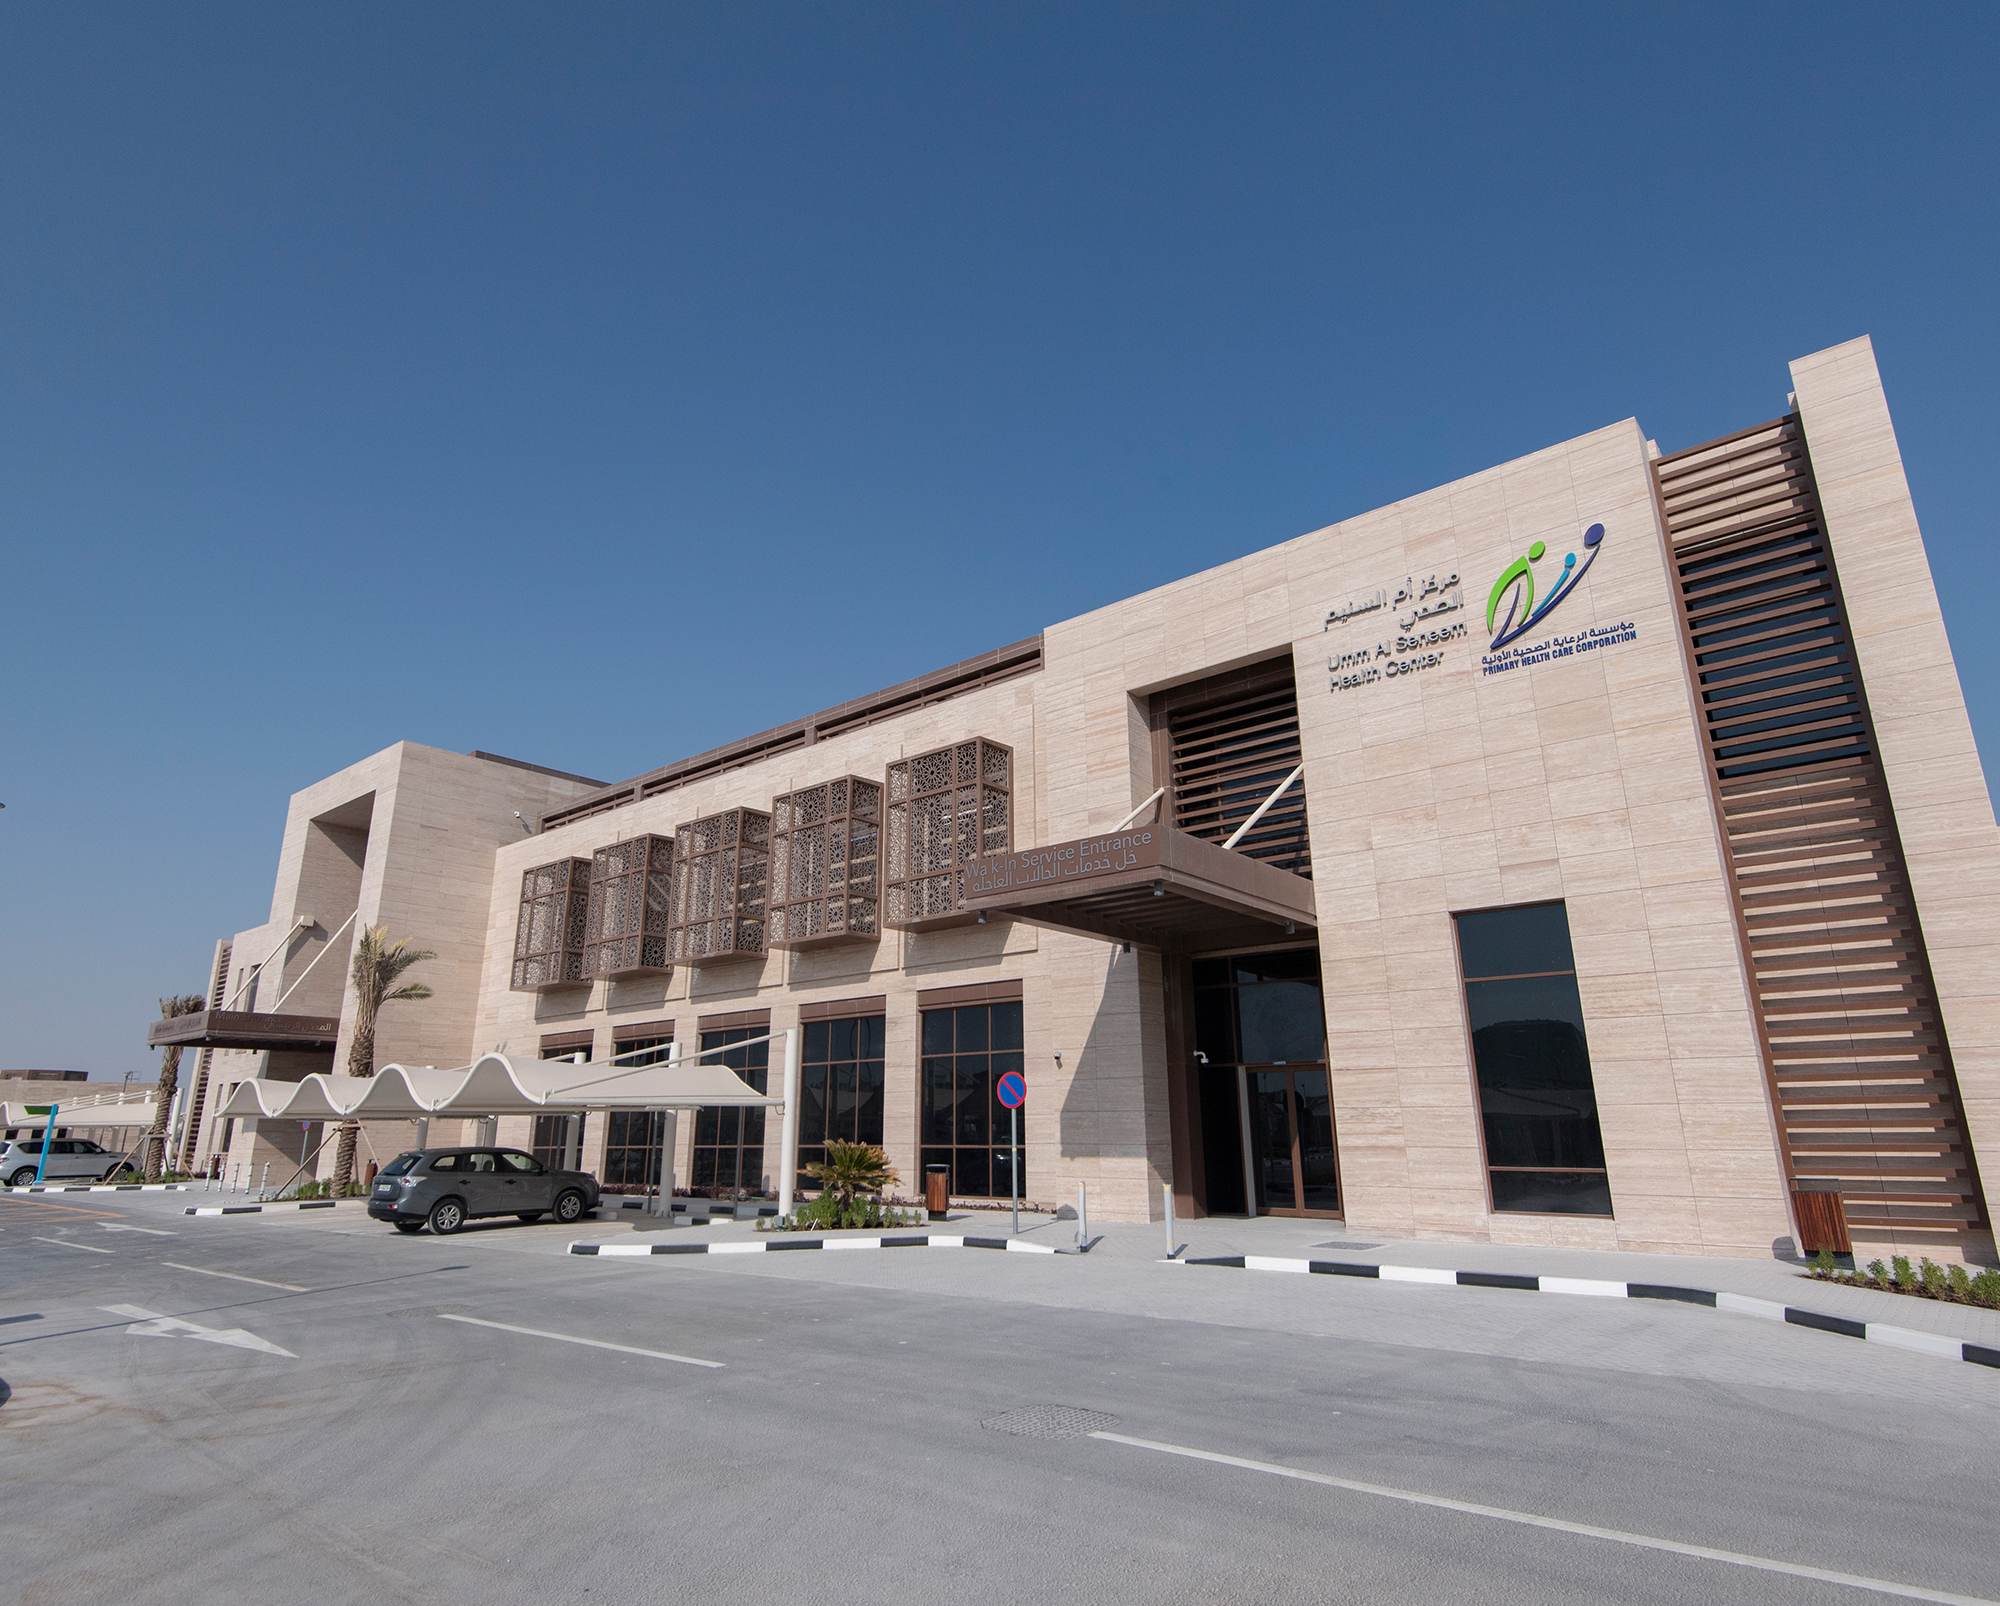 Major Works of Umm Al Seneem Health Center Completed